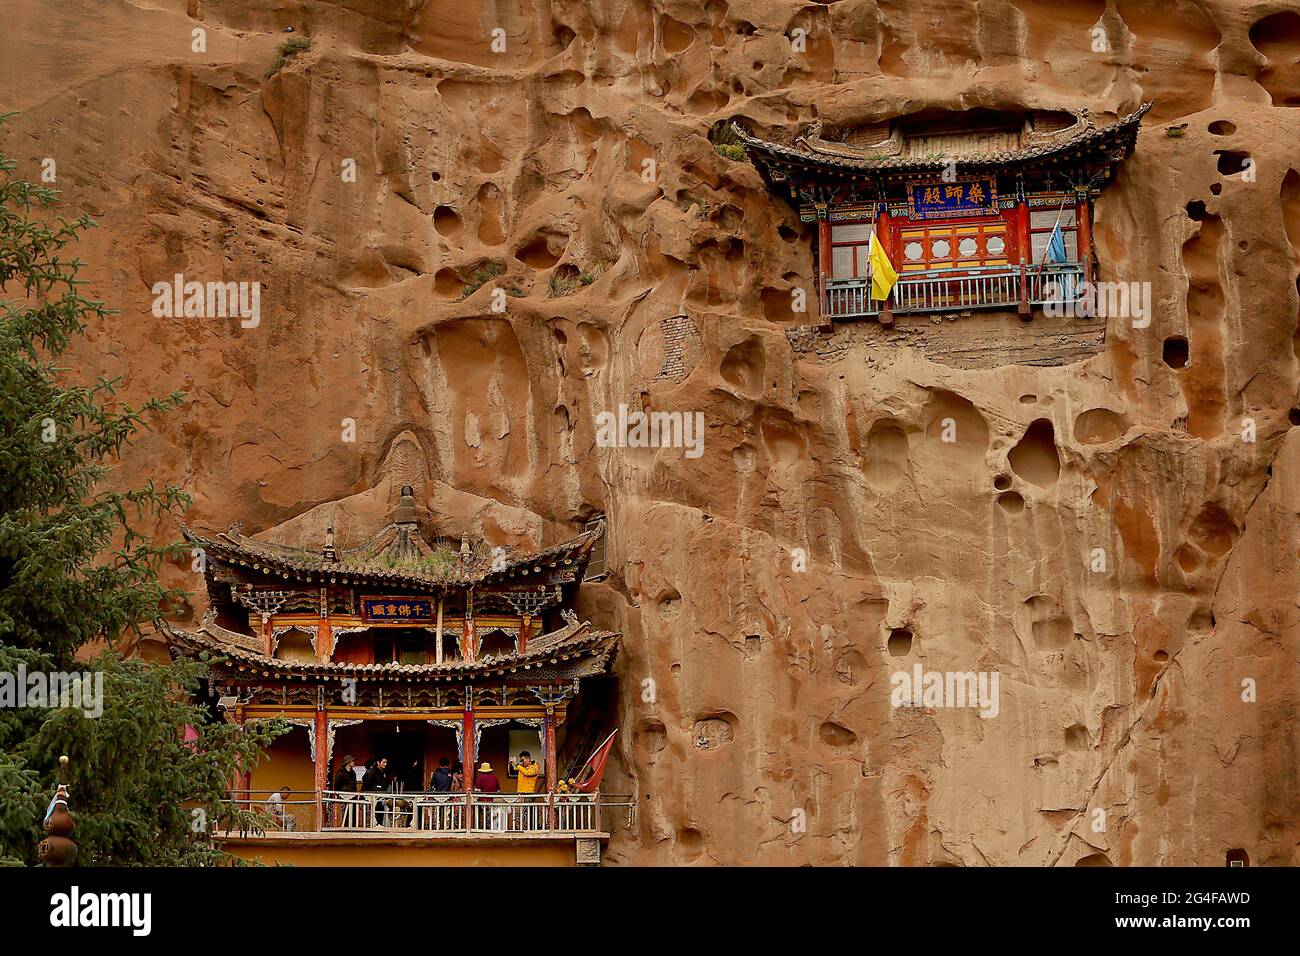 Am Samstag, den 19. Juni 2021, besuchen Touristen die Mati-Tempelgrotten in der Nähe von Wangye, nordwestlich der Provinz Gansu. Der alte Tempel, auch bekannt als der Pferdehof-Tempel, ist eine geschützte tibetisch-buddhistische Stätte mit über 70 Höhlen, die von Hand in die Klippe gehauen wurden. Der Legende nach landete der chinesische Pegasus einst auf der Klippe und hinterließ eine Markierung, so dass der Tempel seinen Namen erhielt. Der Tourismus in der Provinz Gansu, dem siebtgrößten Verwaltungsbezirk Chinas, macht fast die Hälfte des Jahresumsatzes der Provinz aus und bleibt eine der ärmsten Provinzen des Landes. Foto von Stephen Shaver/UPI Stockfoto